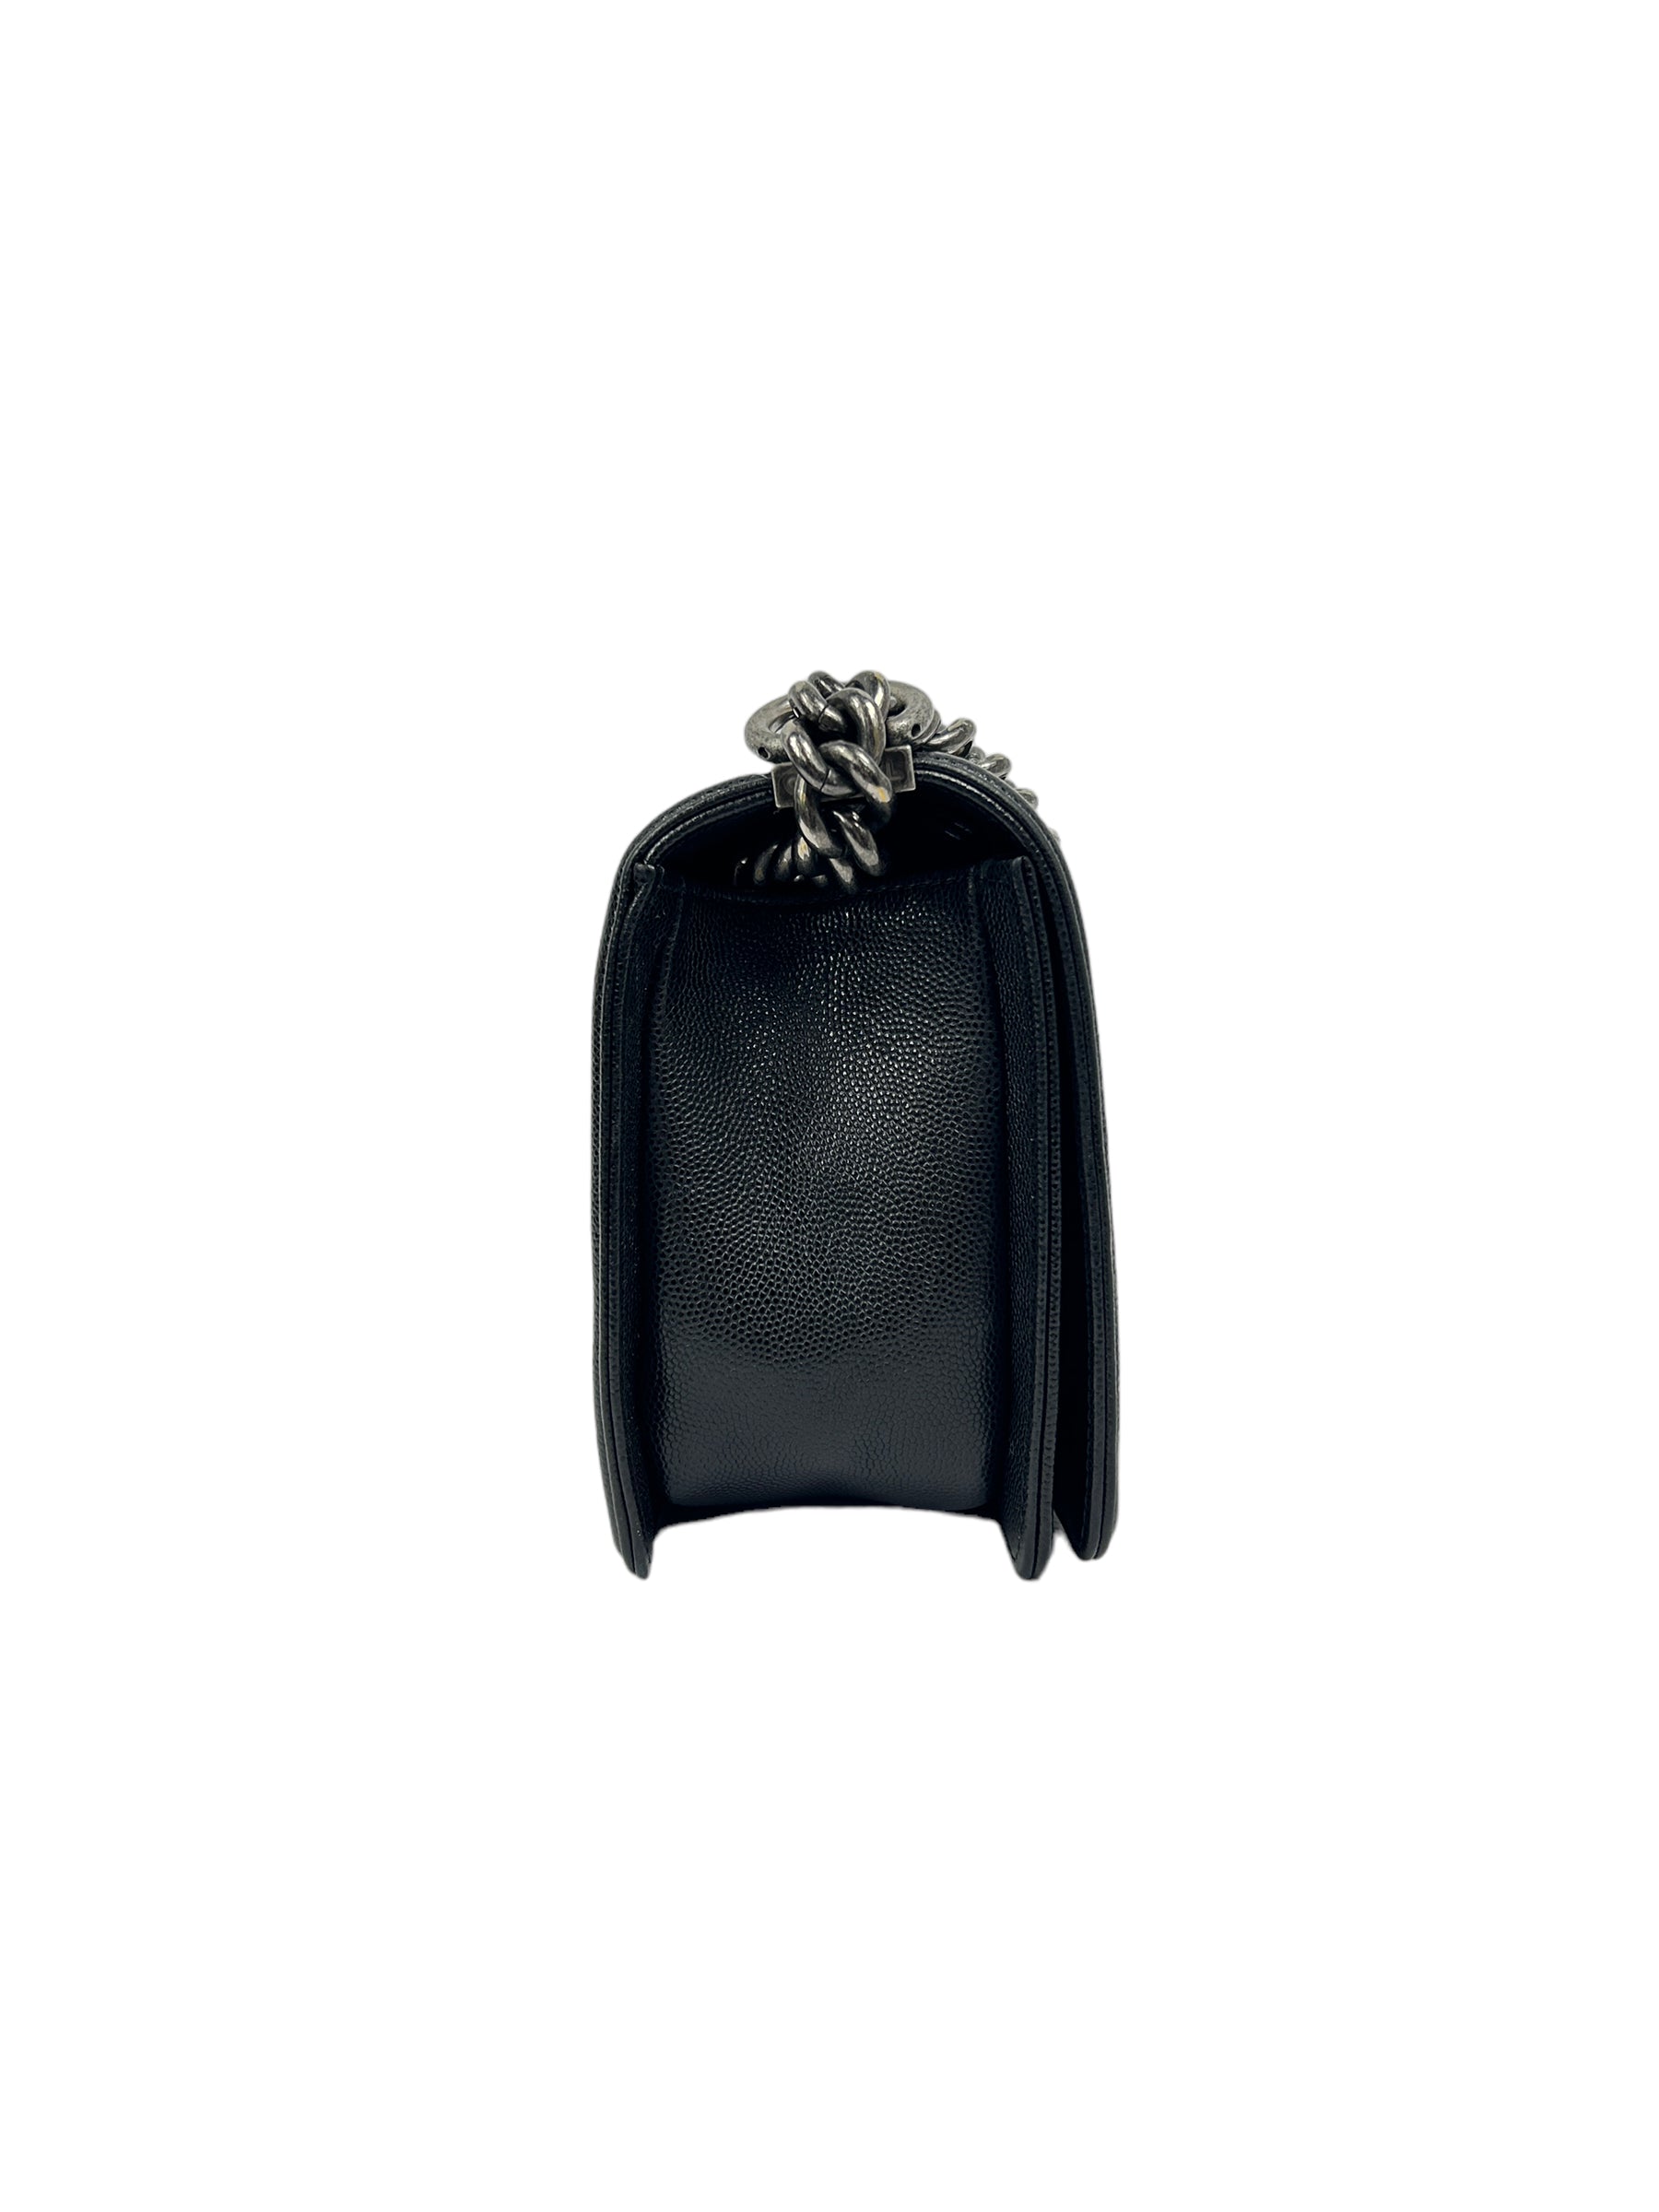 Black Caviar Leather Quilted Old Medium Boy Bag w/RHW